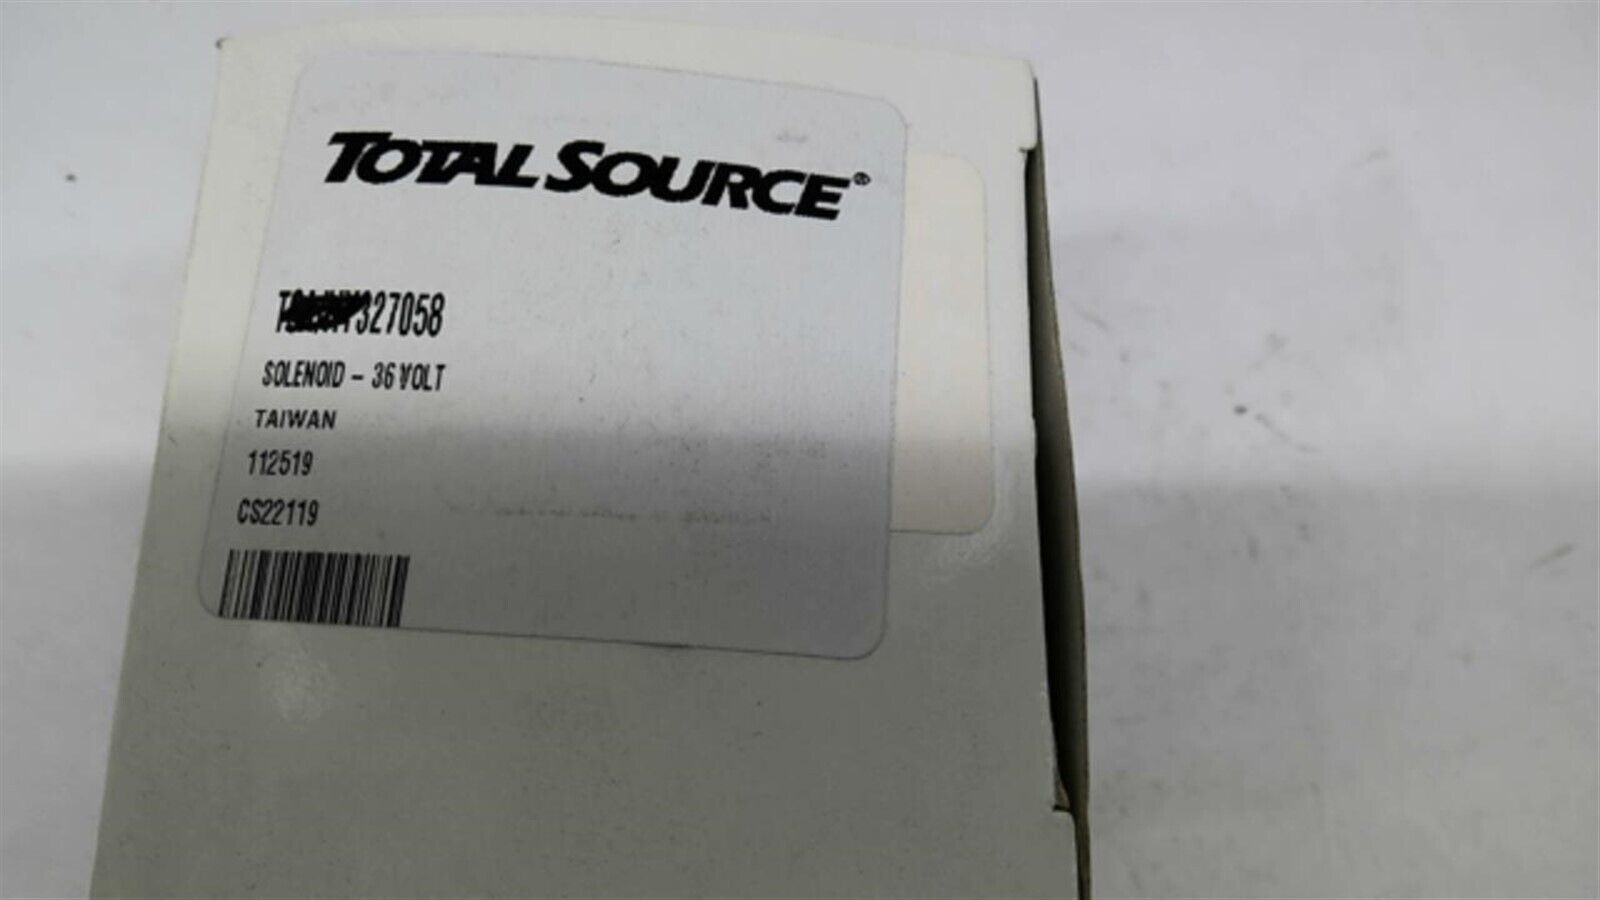 Total Source 27058 Solenoid-36 Volt 112519 CS22119